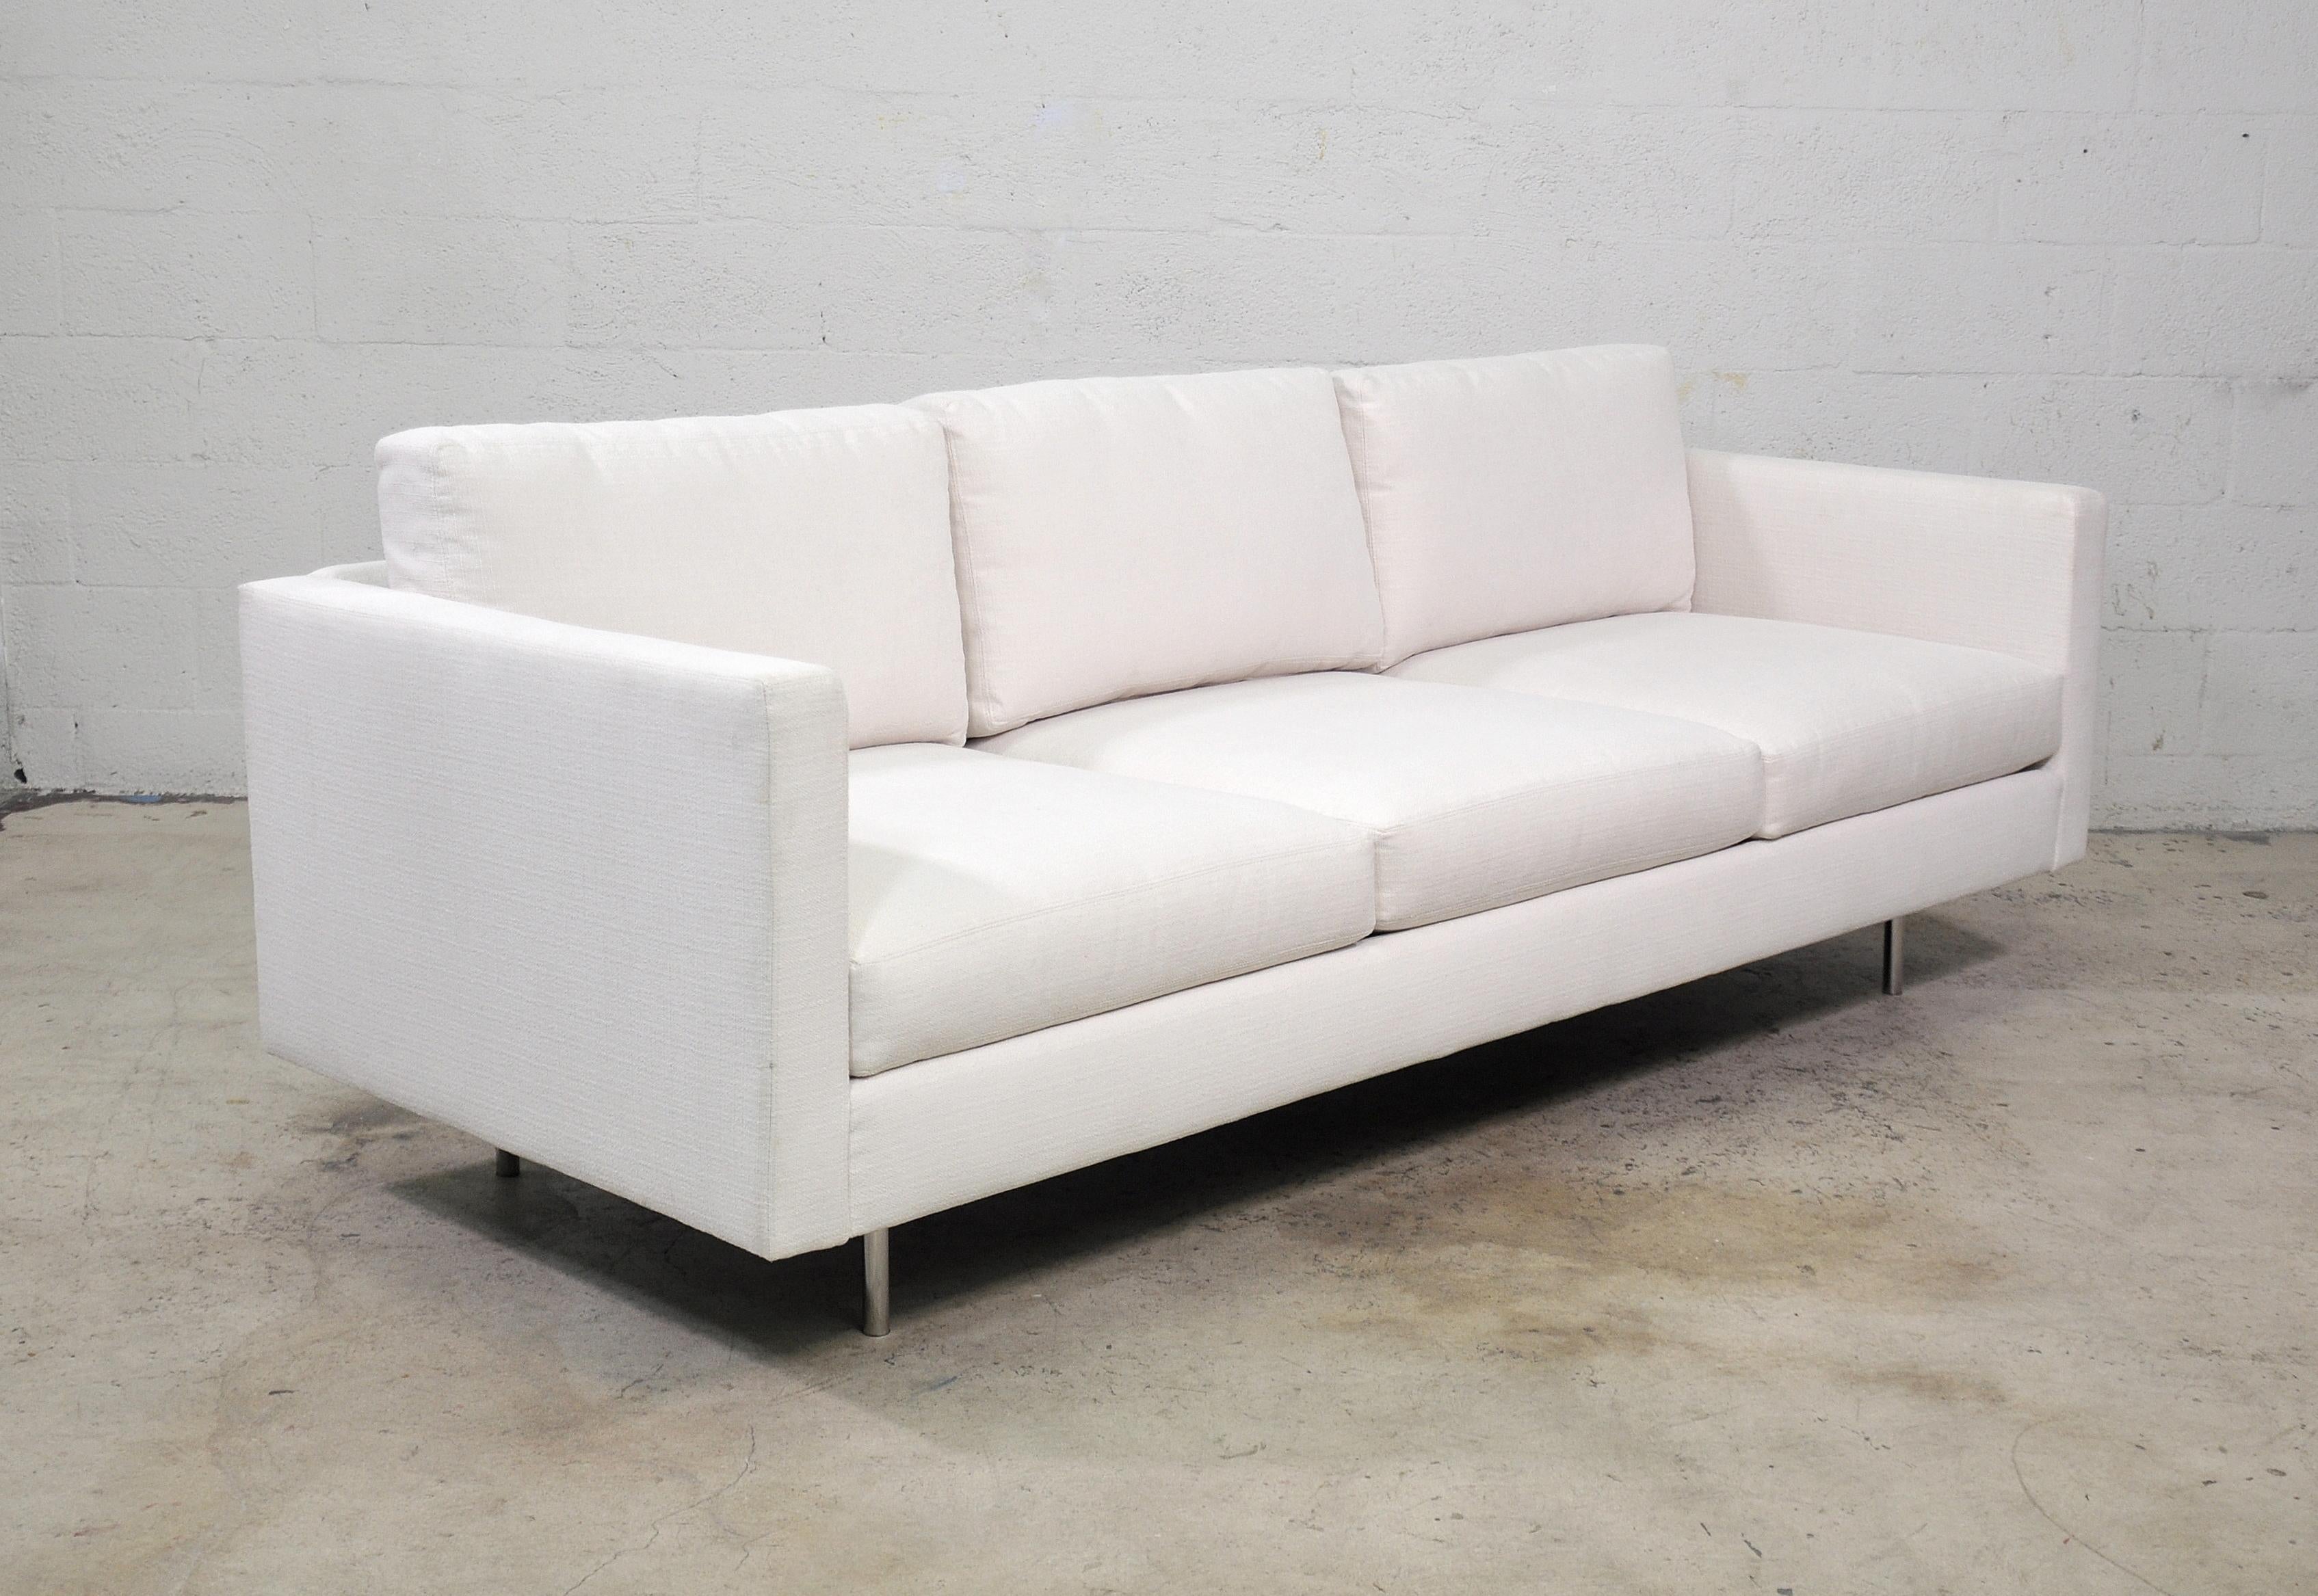 Milo Baughman White Sofa, Thayer Coggin 855 Design Classic 3